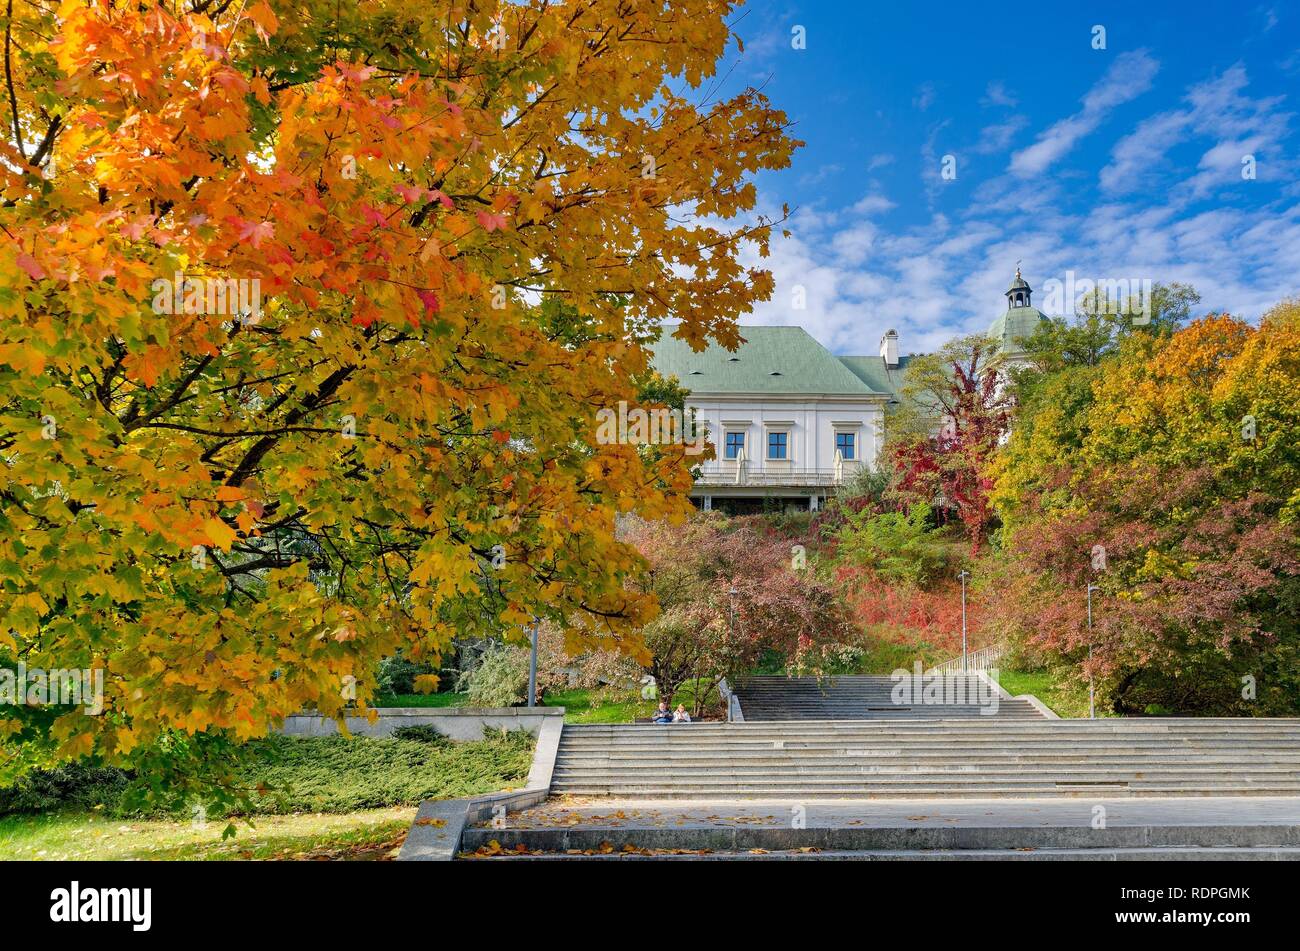 La province de Mazovie, VARSOVIE / Pologne - 11 octobre 2018 : Château Ujazdow, Centre d'art contemporain, vue formulaire Ujazdow Park. Banque D'Images